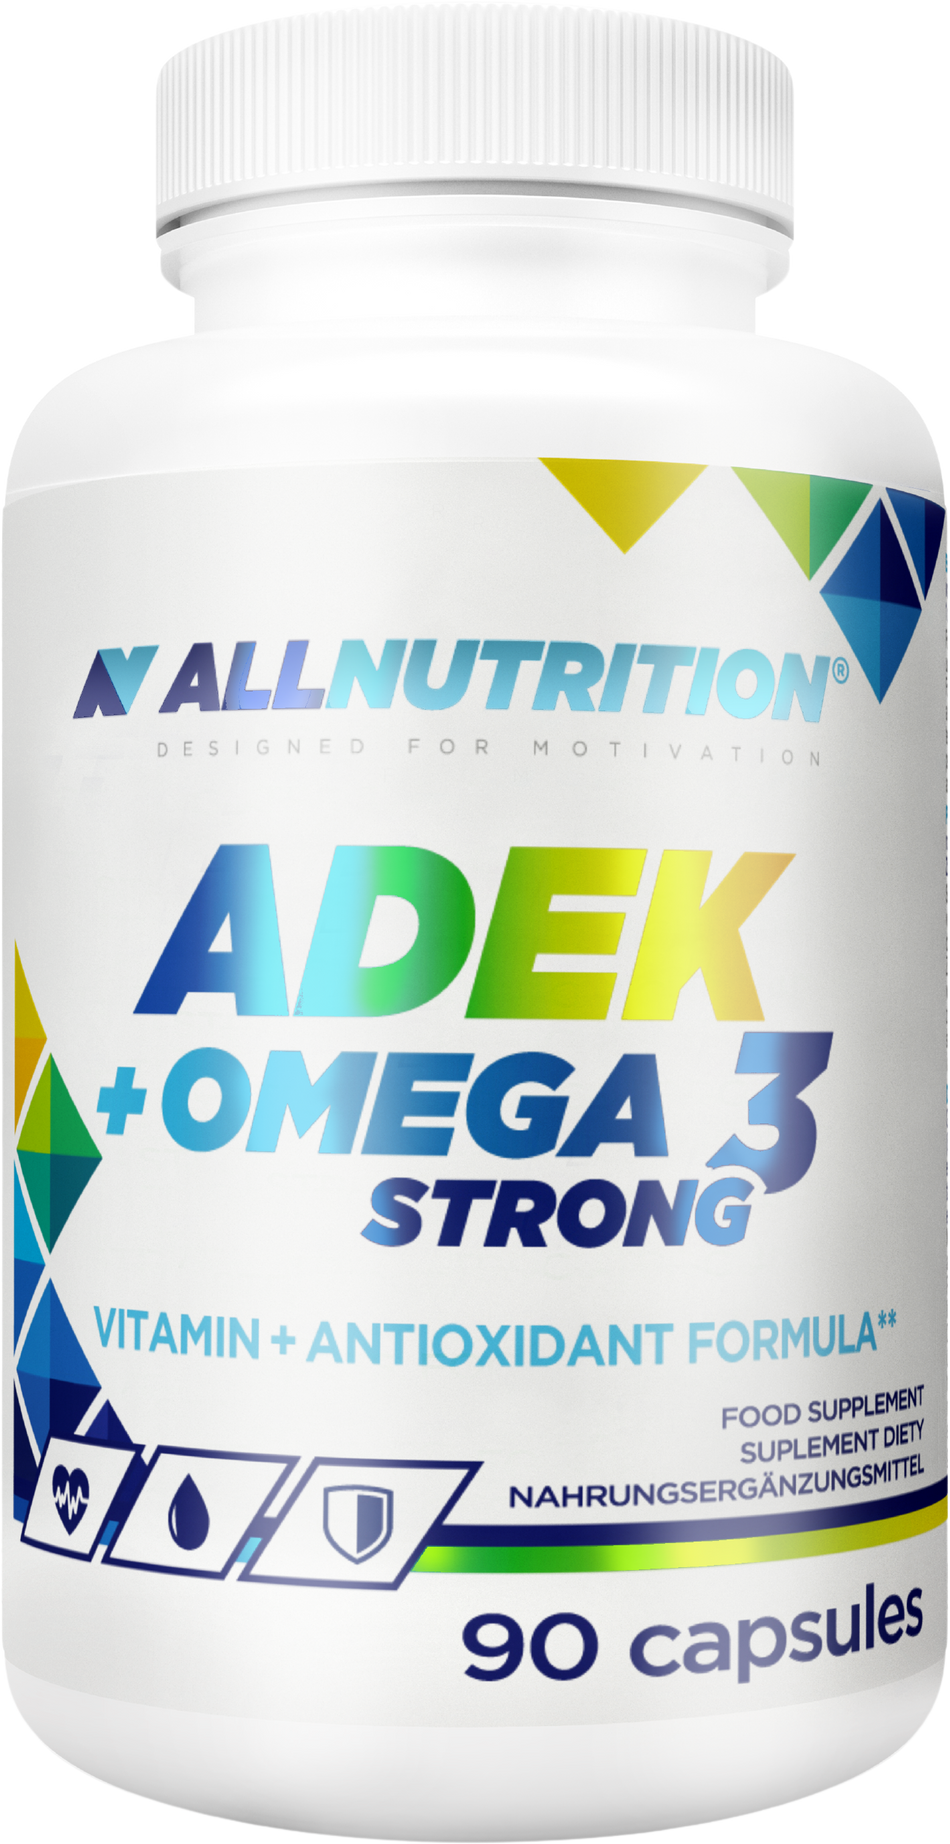 ADEK + Omega 3 Strong - 